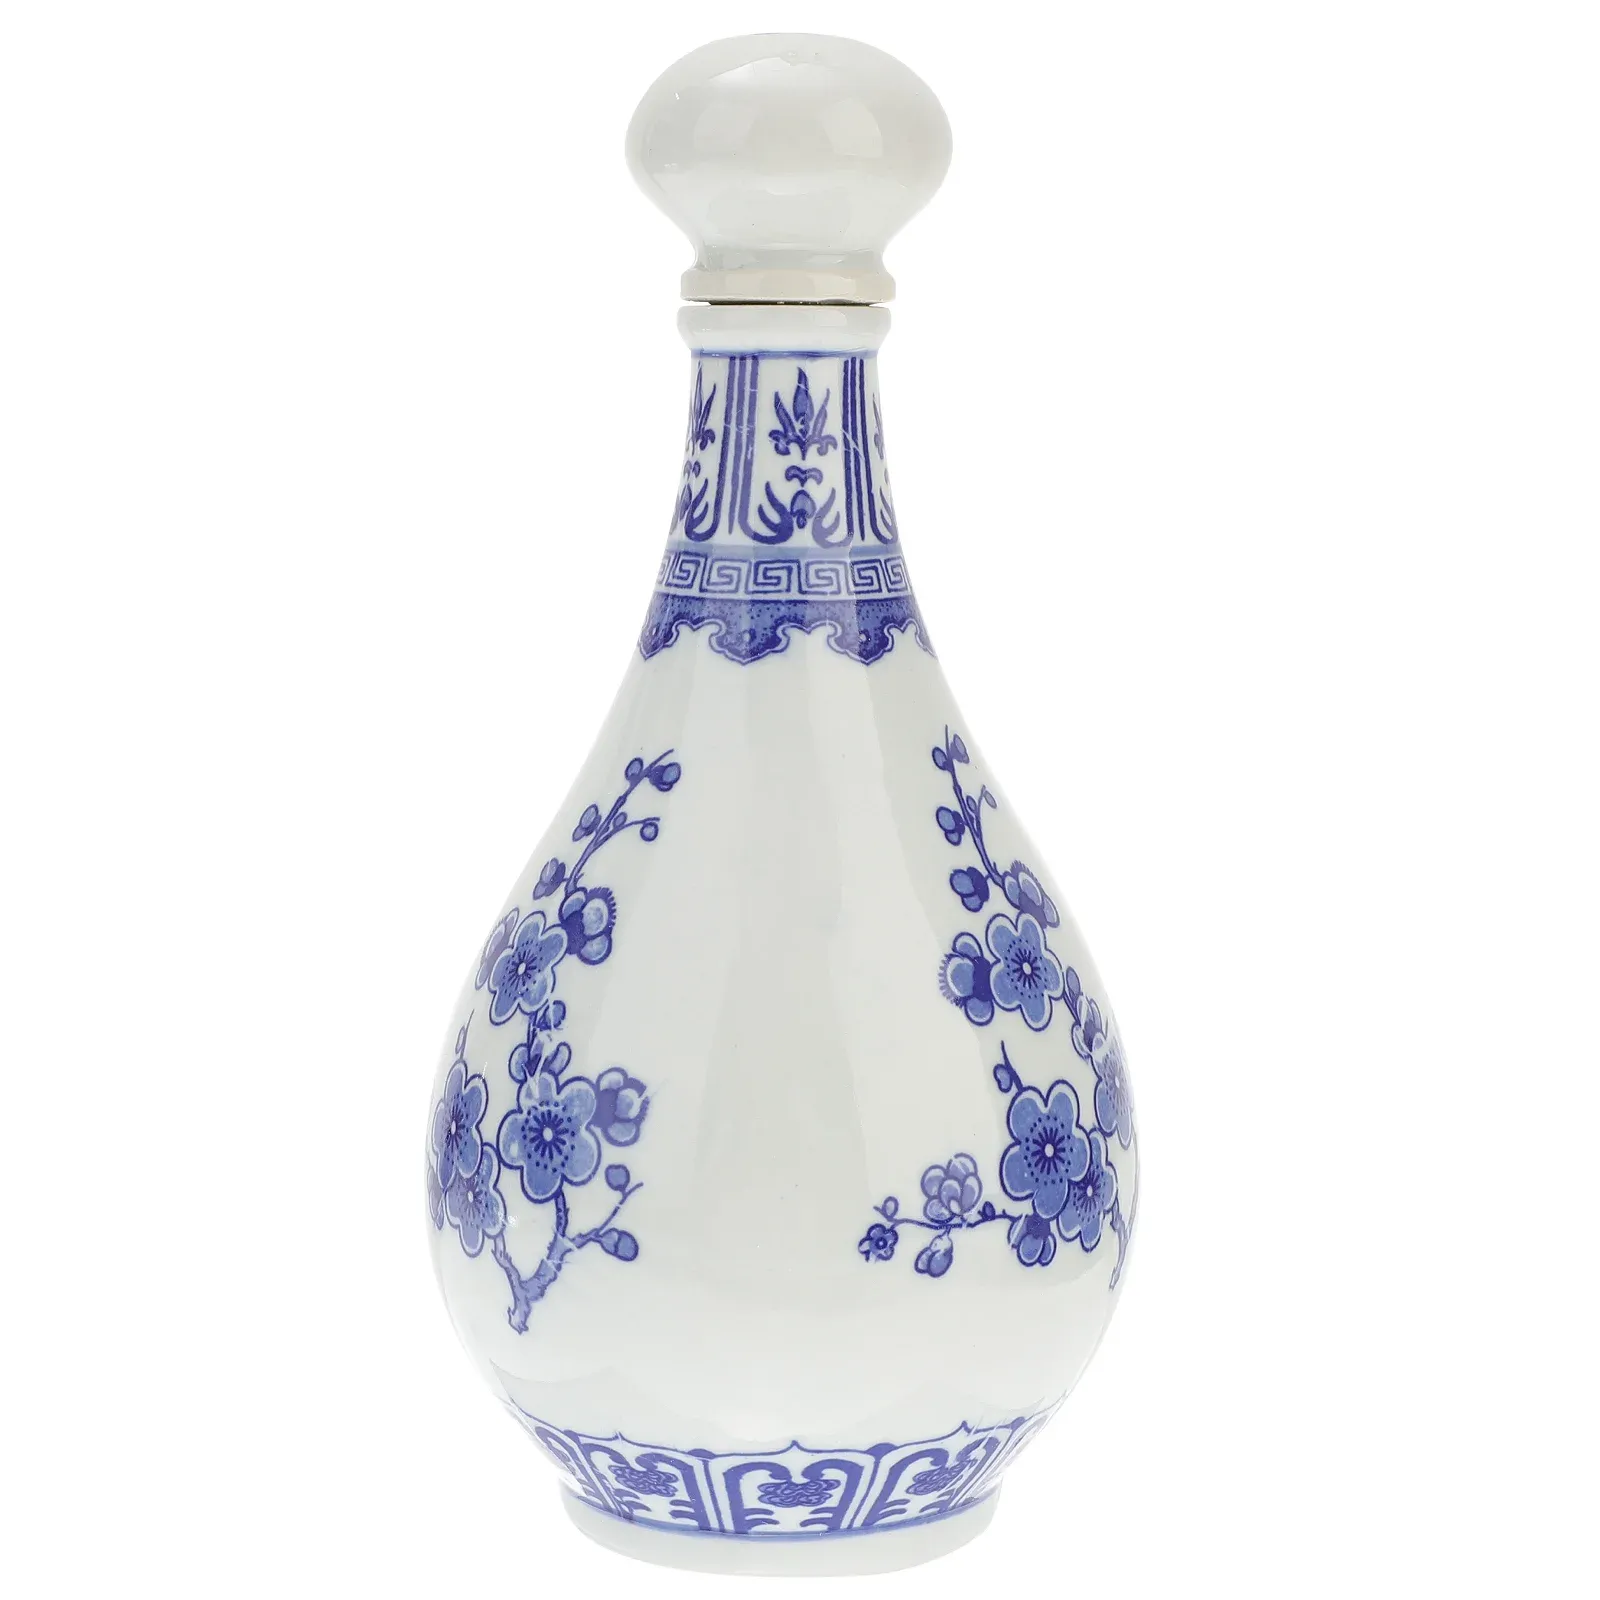 Jarrones Botella Sake chino Olla de cerámica Jarra Jarra Blanco Azul Contenedor japonés Porcelana Frasco vintage Cruet Calabaza Retro Tokkuri Sirviendo